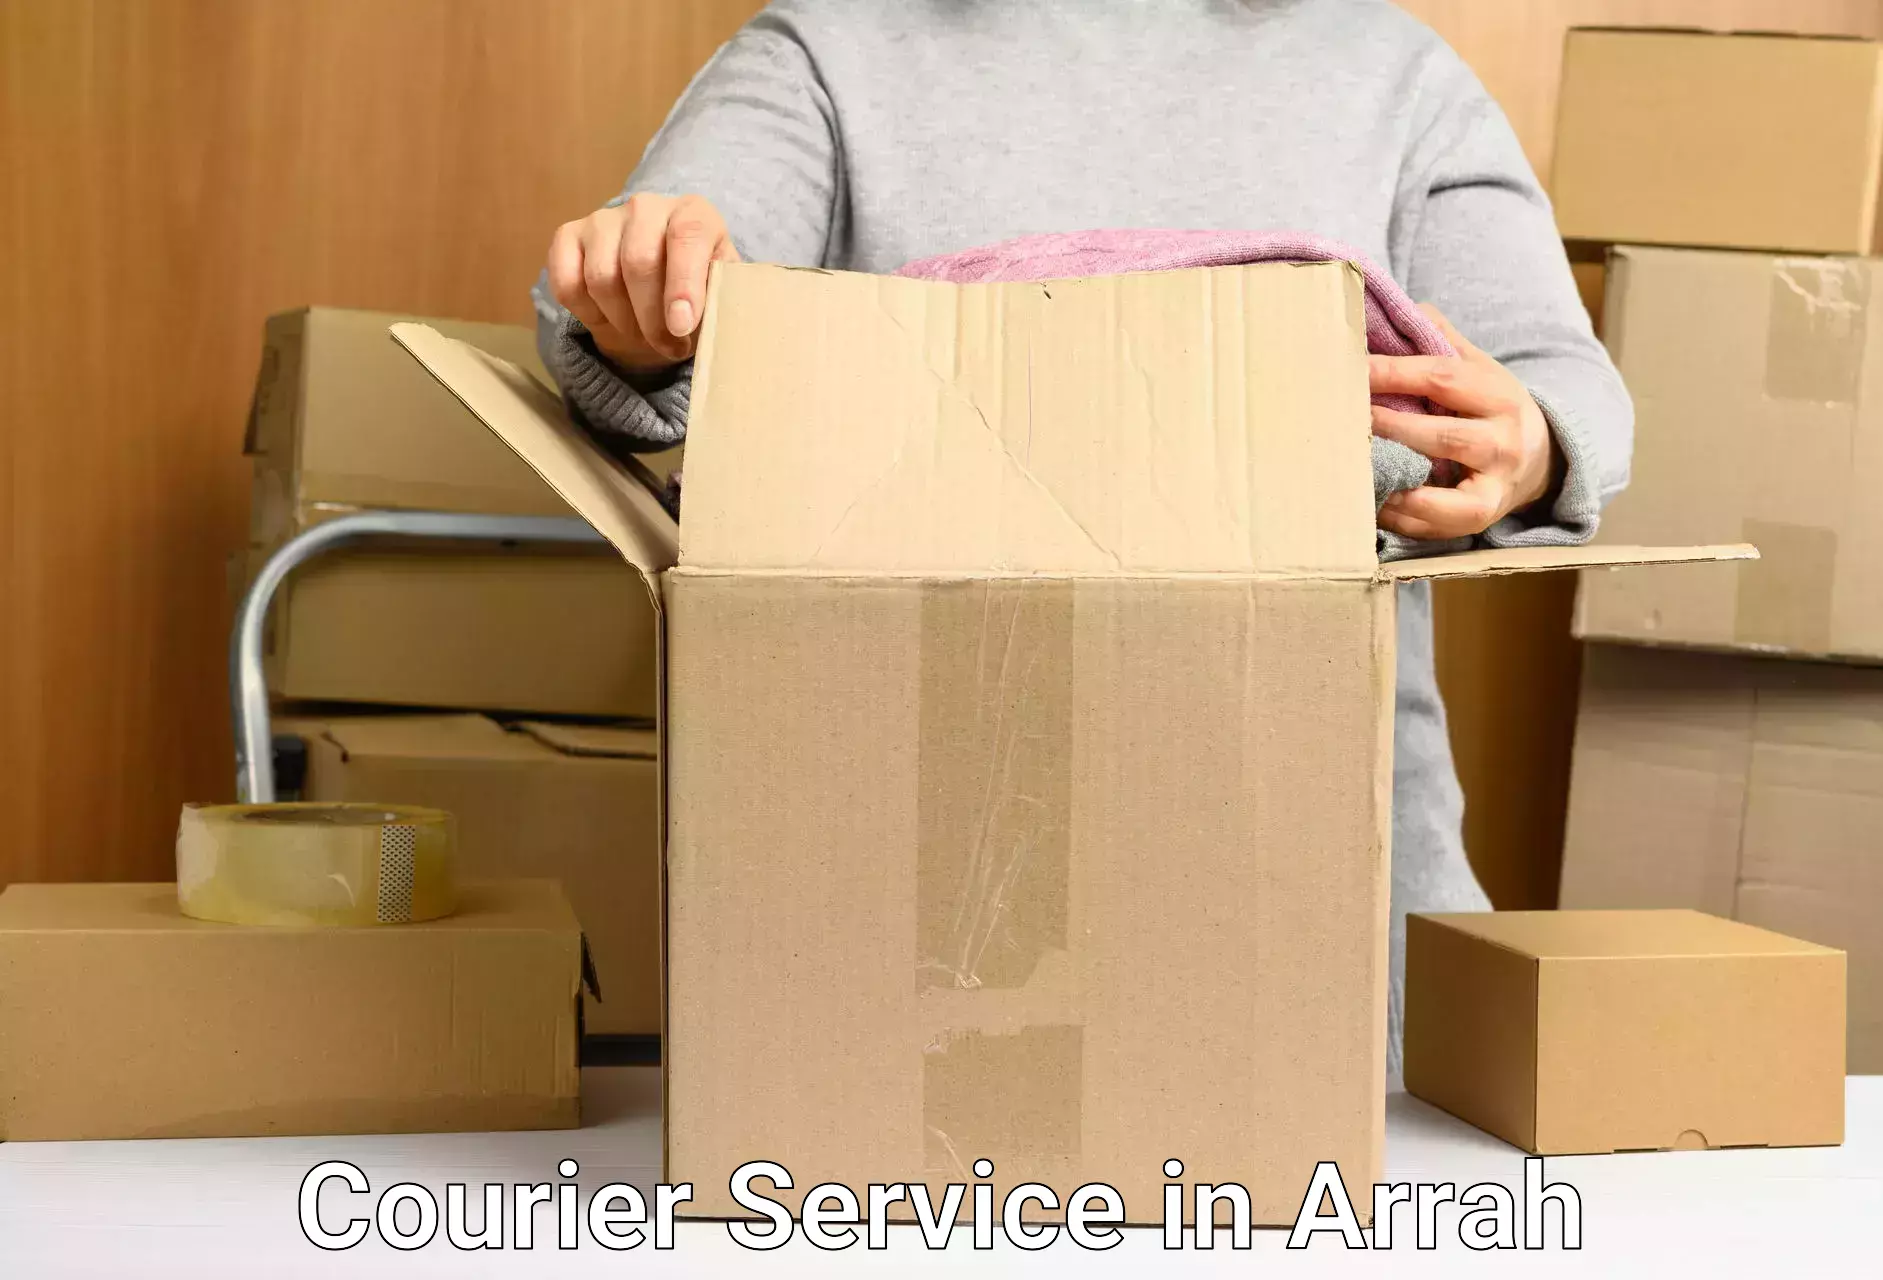 Wholesale parcel delivery in Arrah